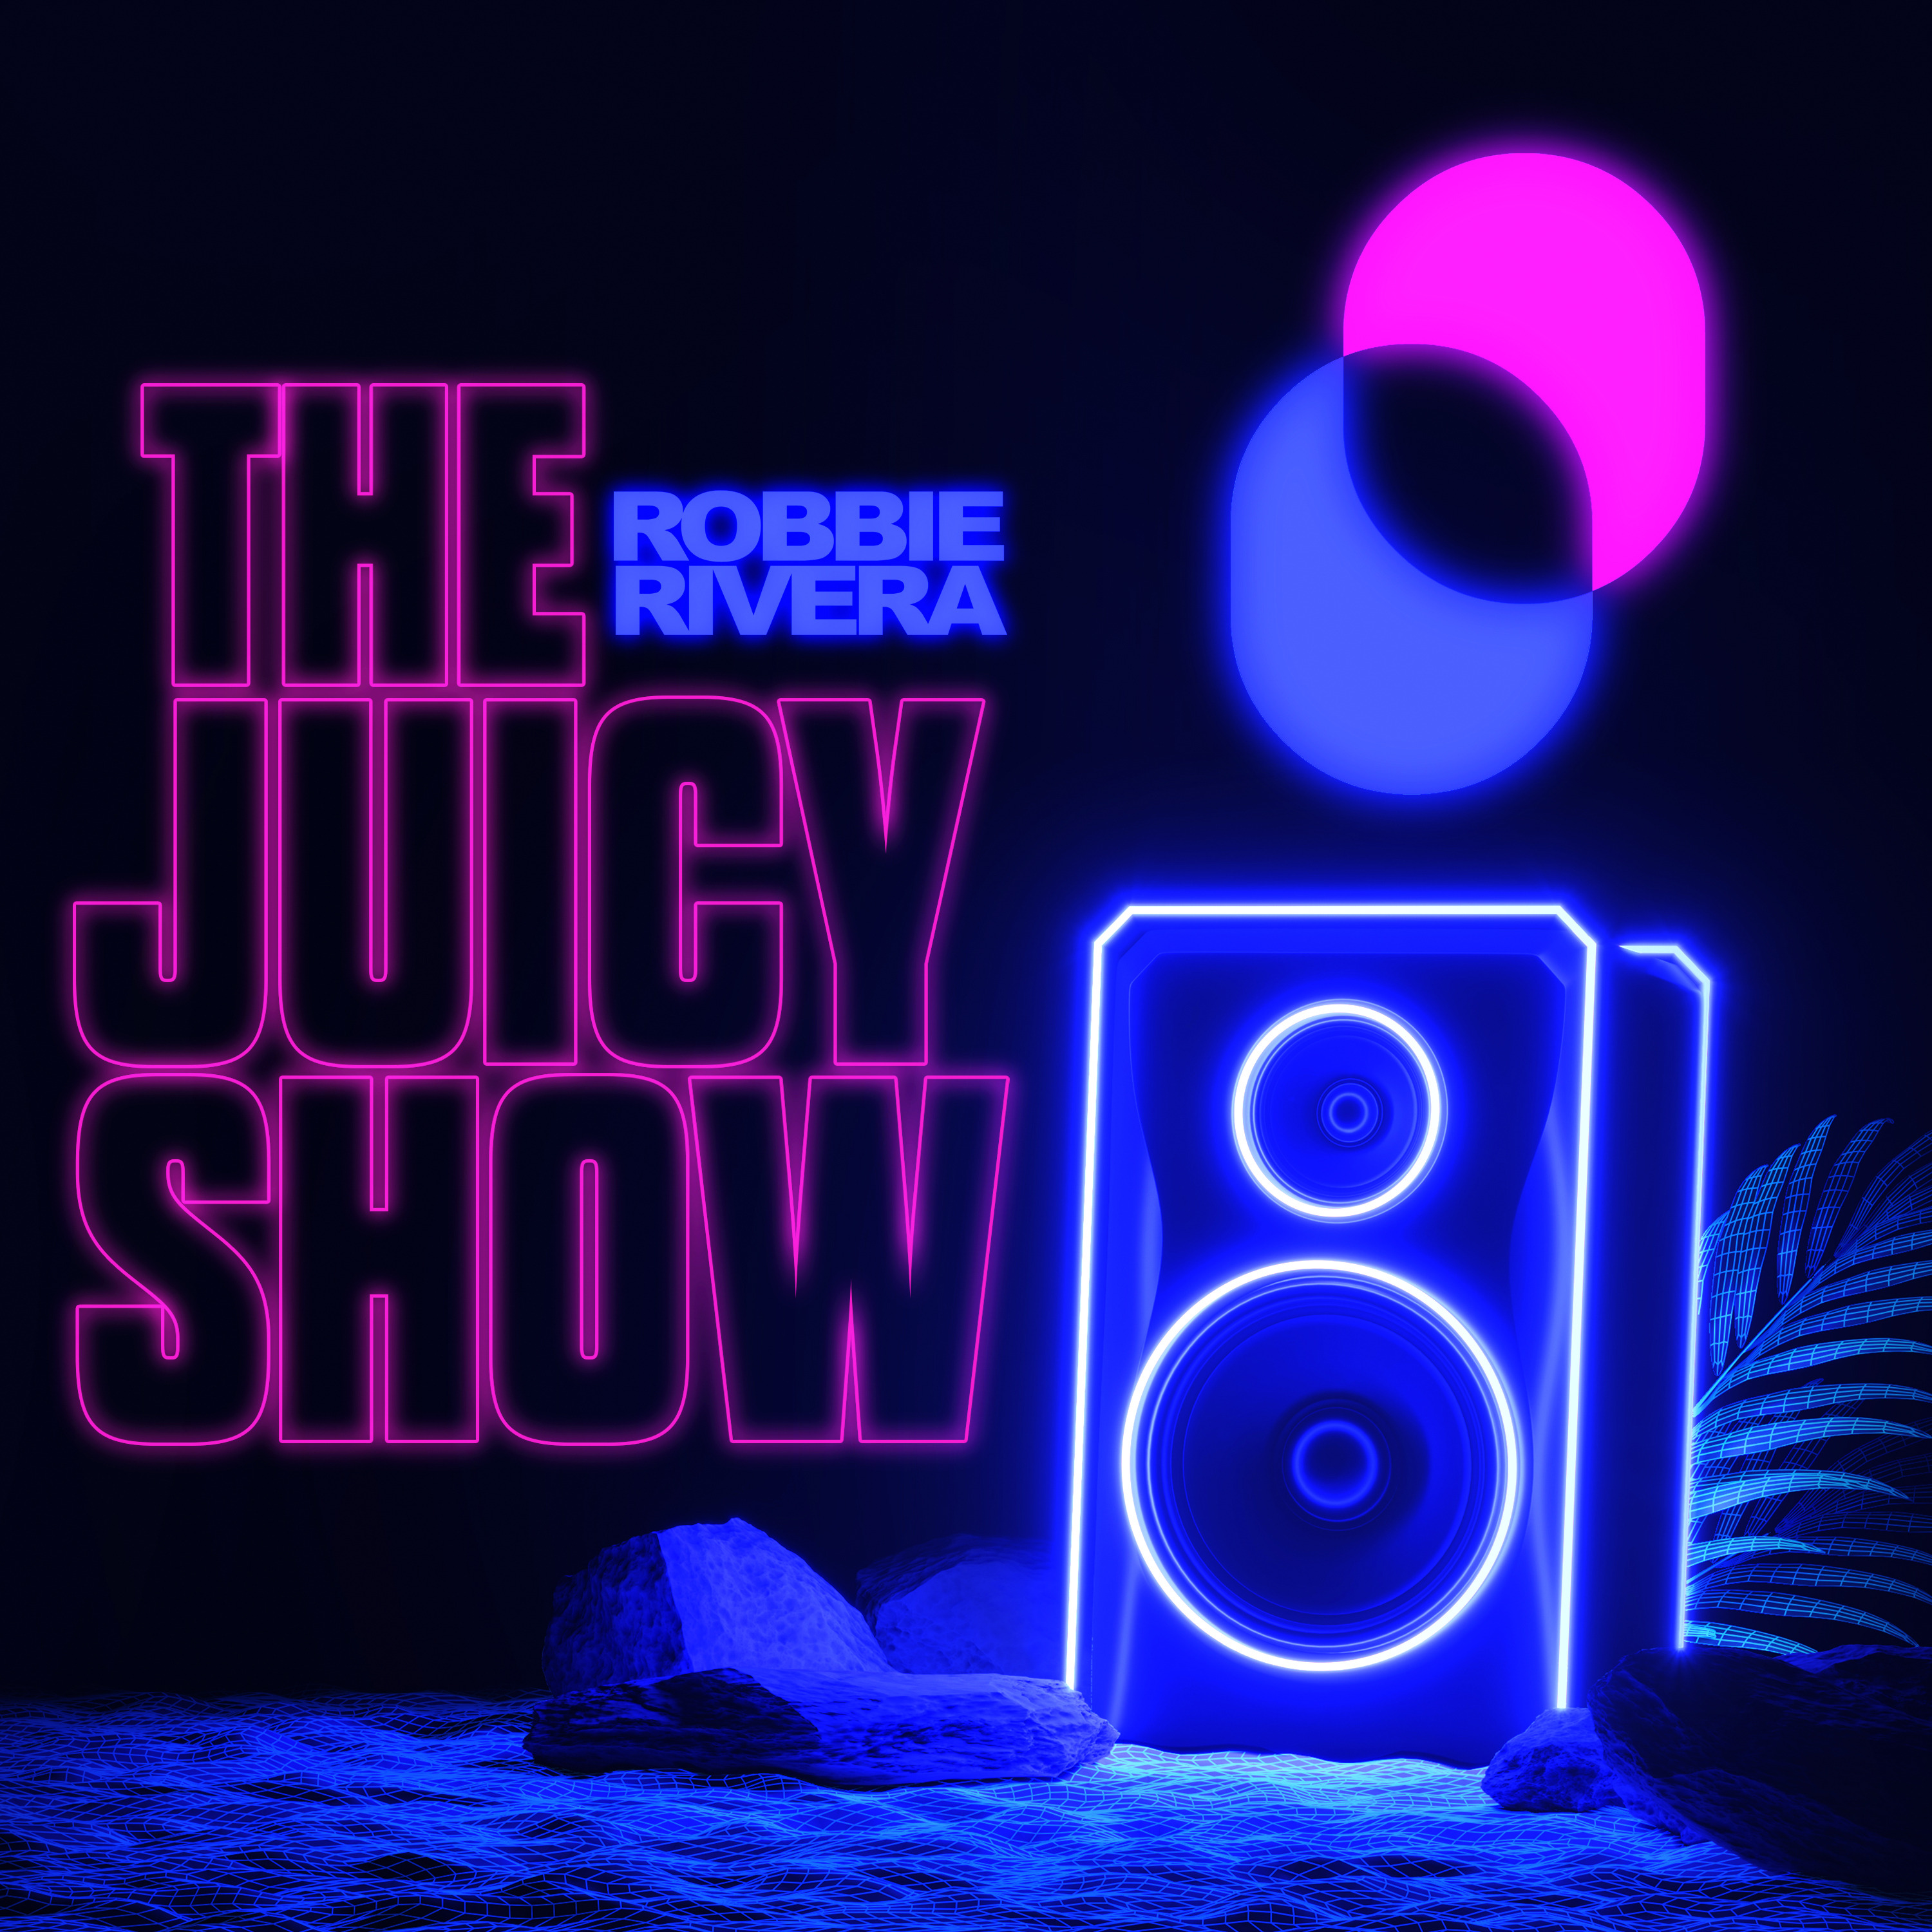 The Juicy Radio Show